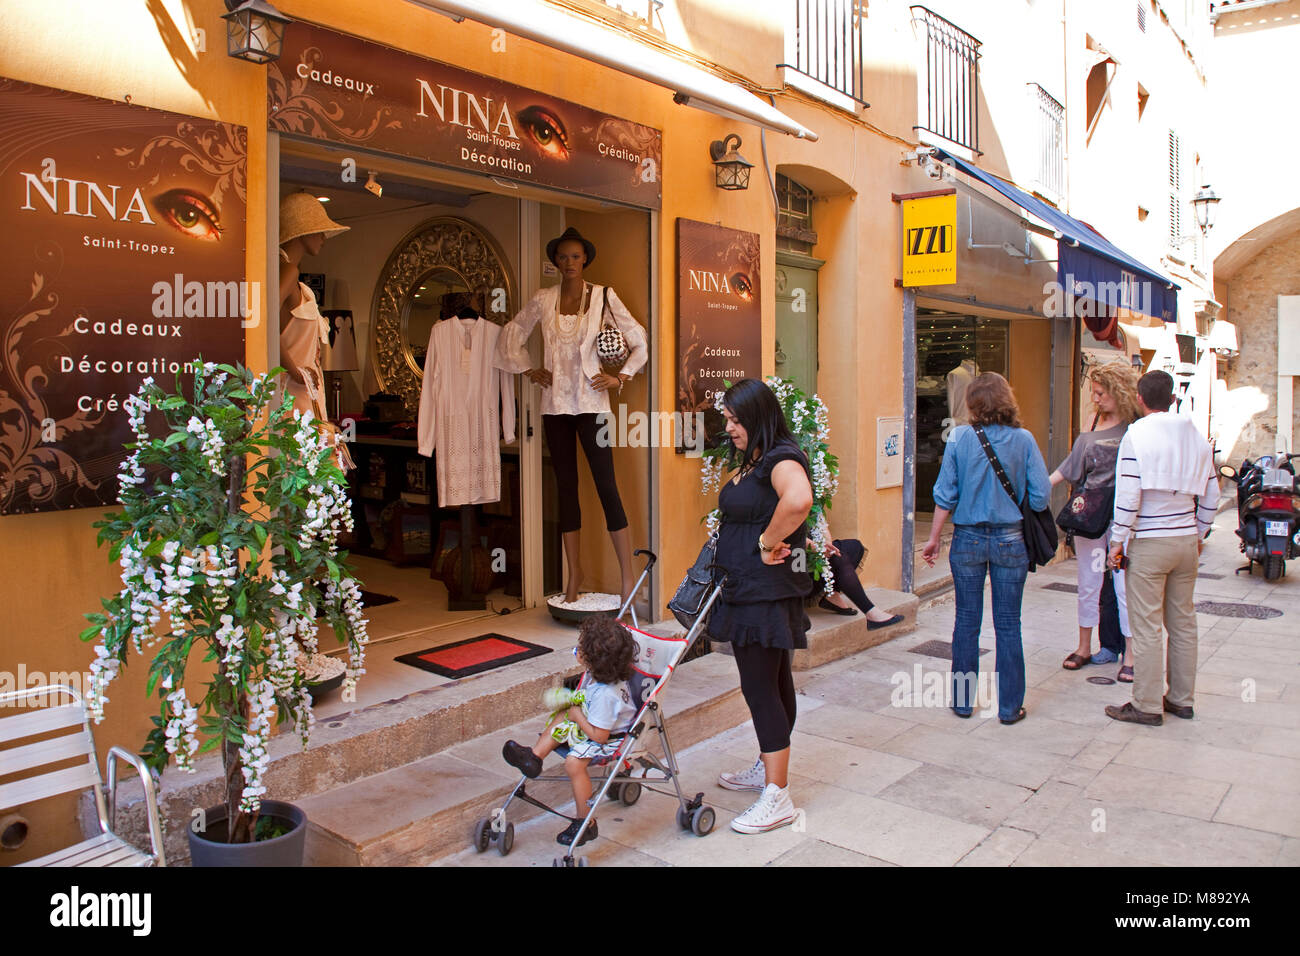 Tienda de moda Nina en un callejón, casco antiguo de la ciudad de Saint-Tropez, la riviera francesa, en el sur de Francia, Cote d'Azur, Francia, Europa Foto de stock